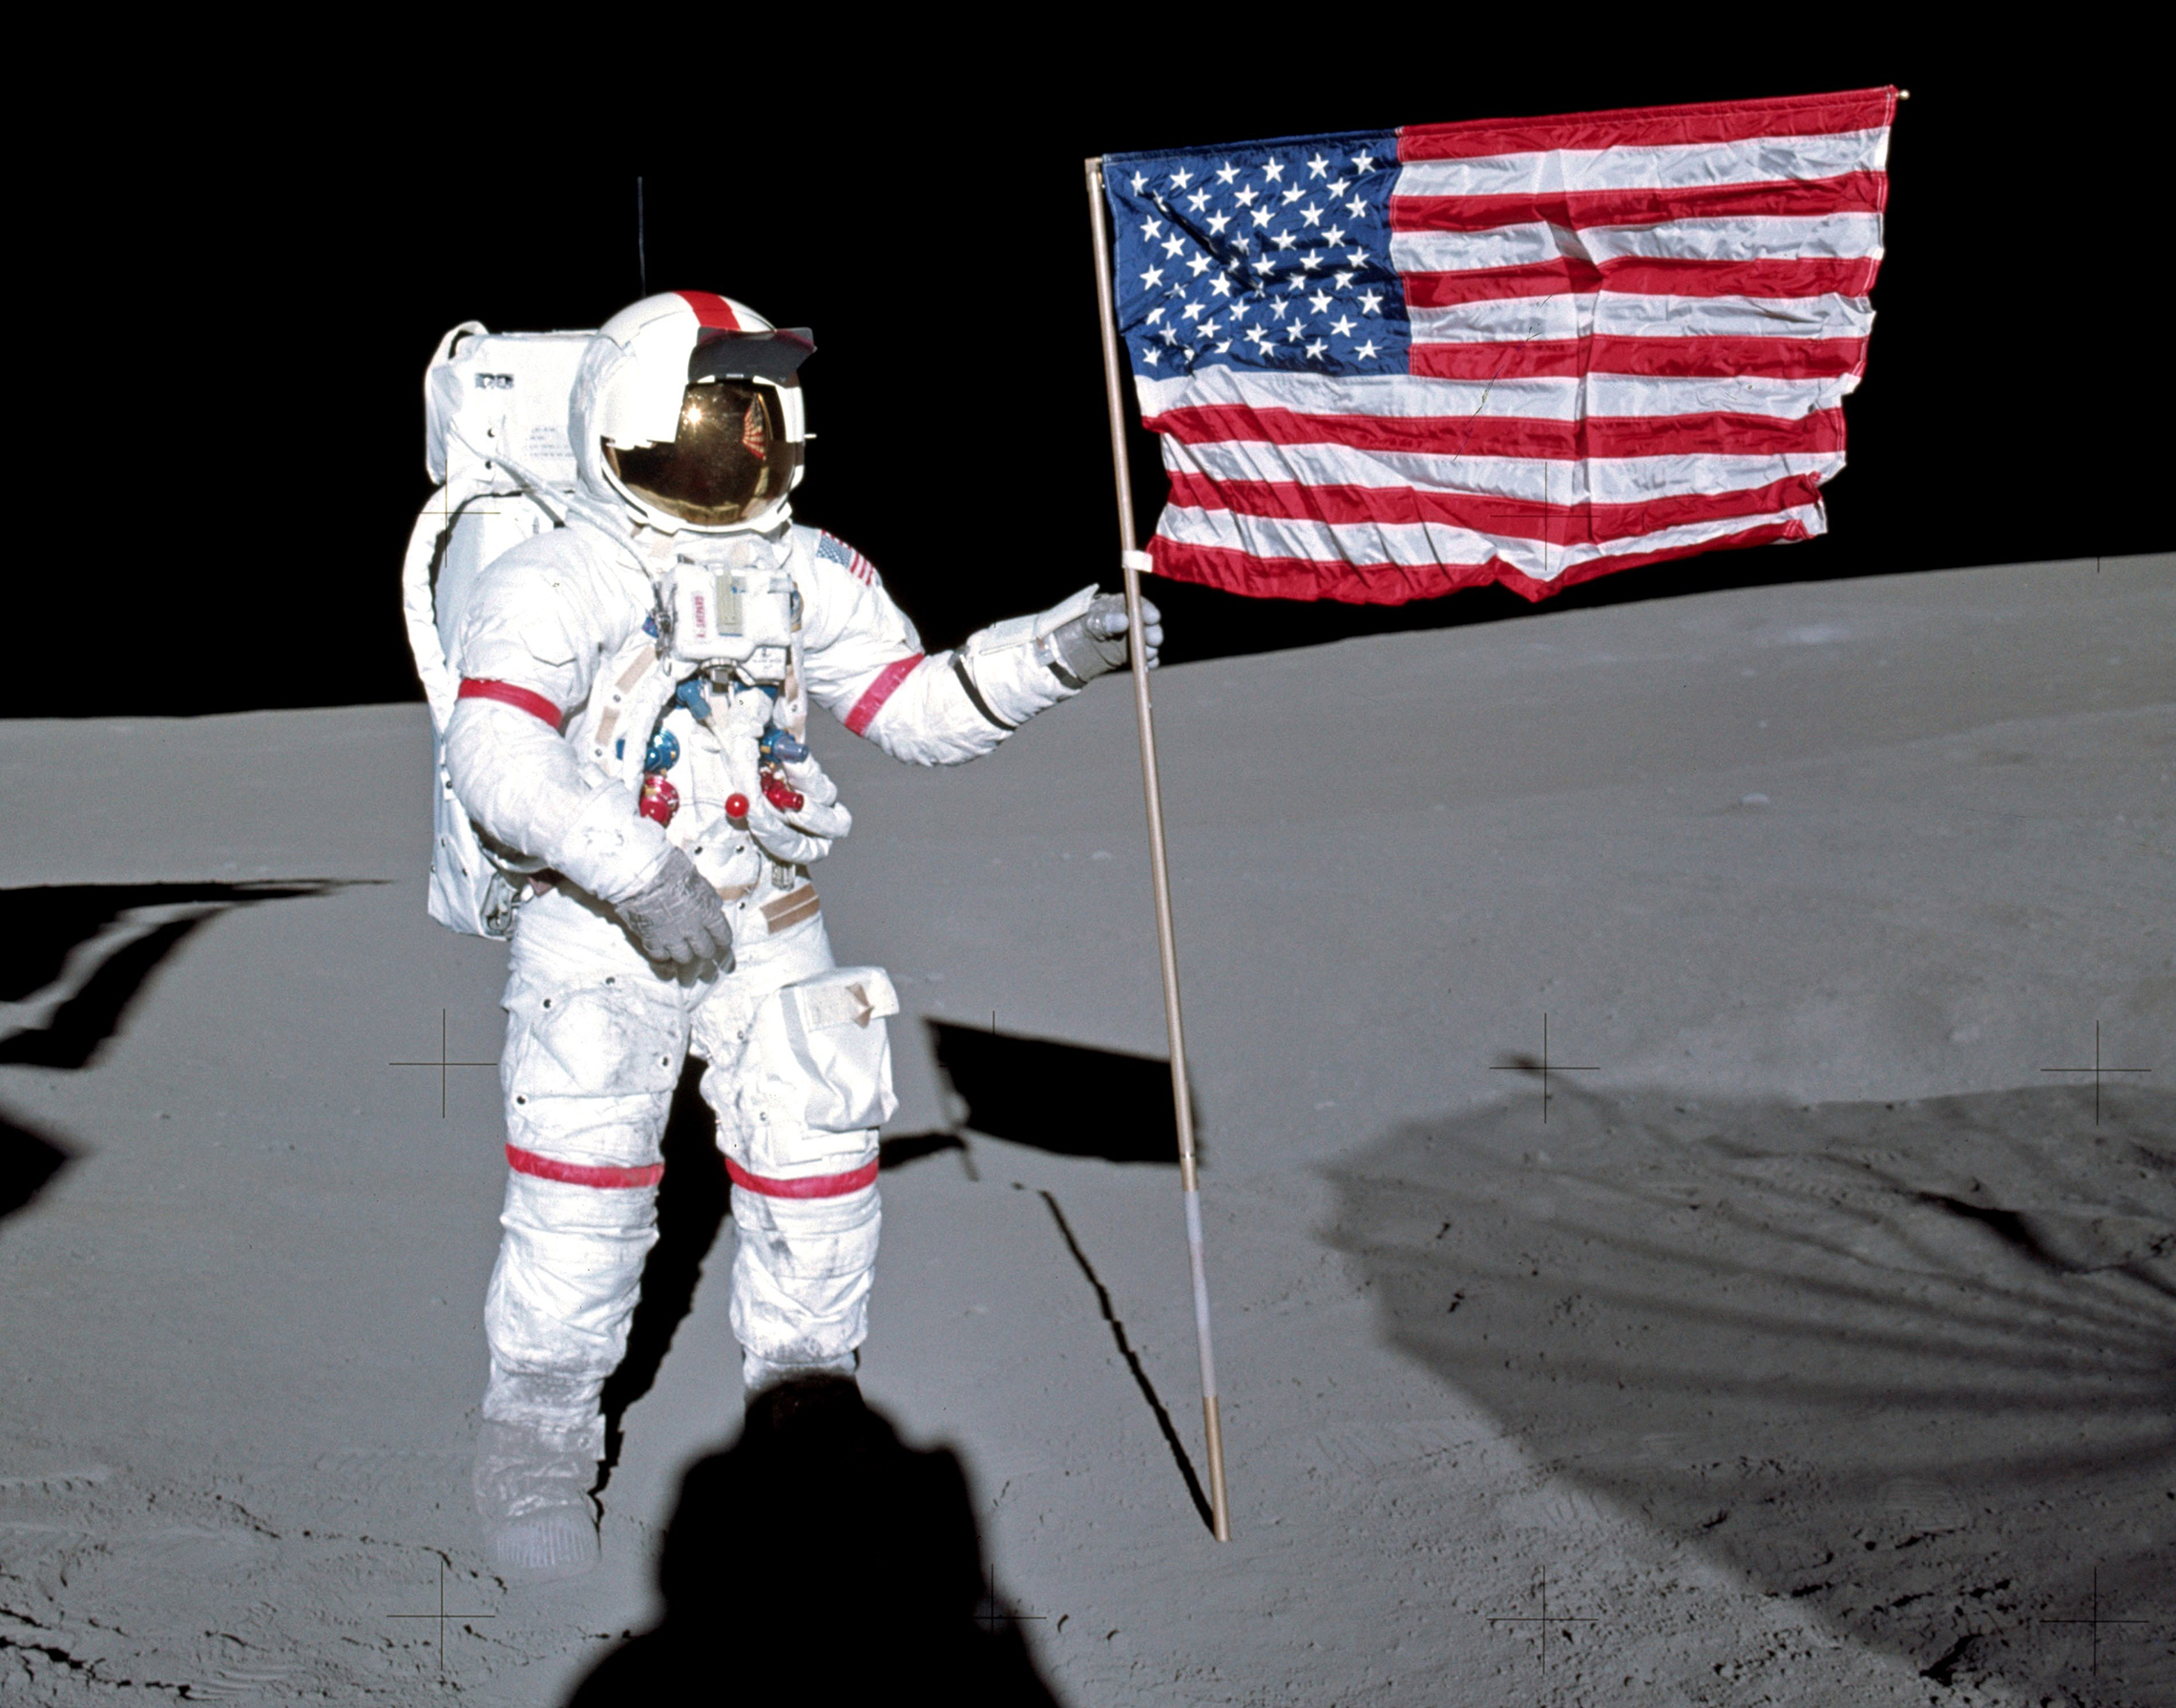 Alan Shepard planta a bandeira americana na lua.5 de fevereiro de 1971: o astronauta Alan B. Shepard Jr., comandante da missão Apollo 14 de pouso lunar, está ao lado da bandeira dos Estados Unidos na superfície lunar durante os primeiros momentos da primeira atividade extra-veicular da missão. Enquanto Shepard e o astronauta Edgar D. Mitchell, o piloto do módulo lunar, estavam explorando a Lua, O astronauta Stuart A. Roosa, piloto do módulo de comando, estava manobrando o módulo de Serviço de comando na órbita lunar. (NASA Photo)